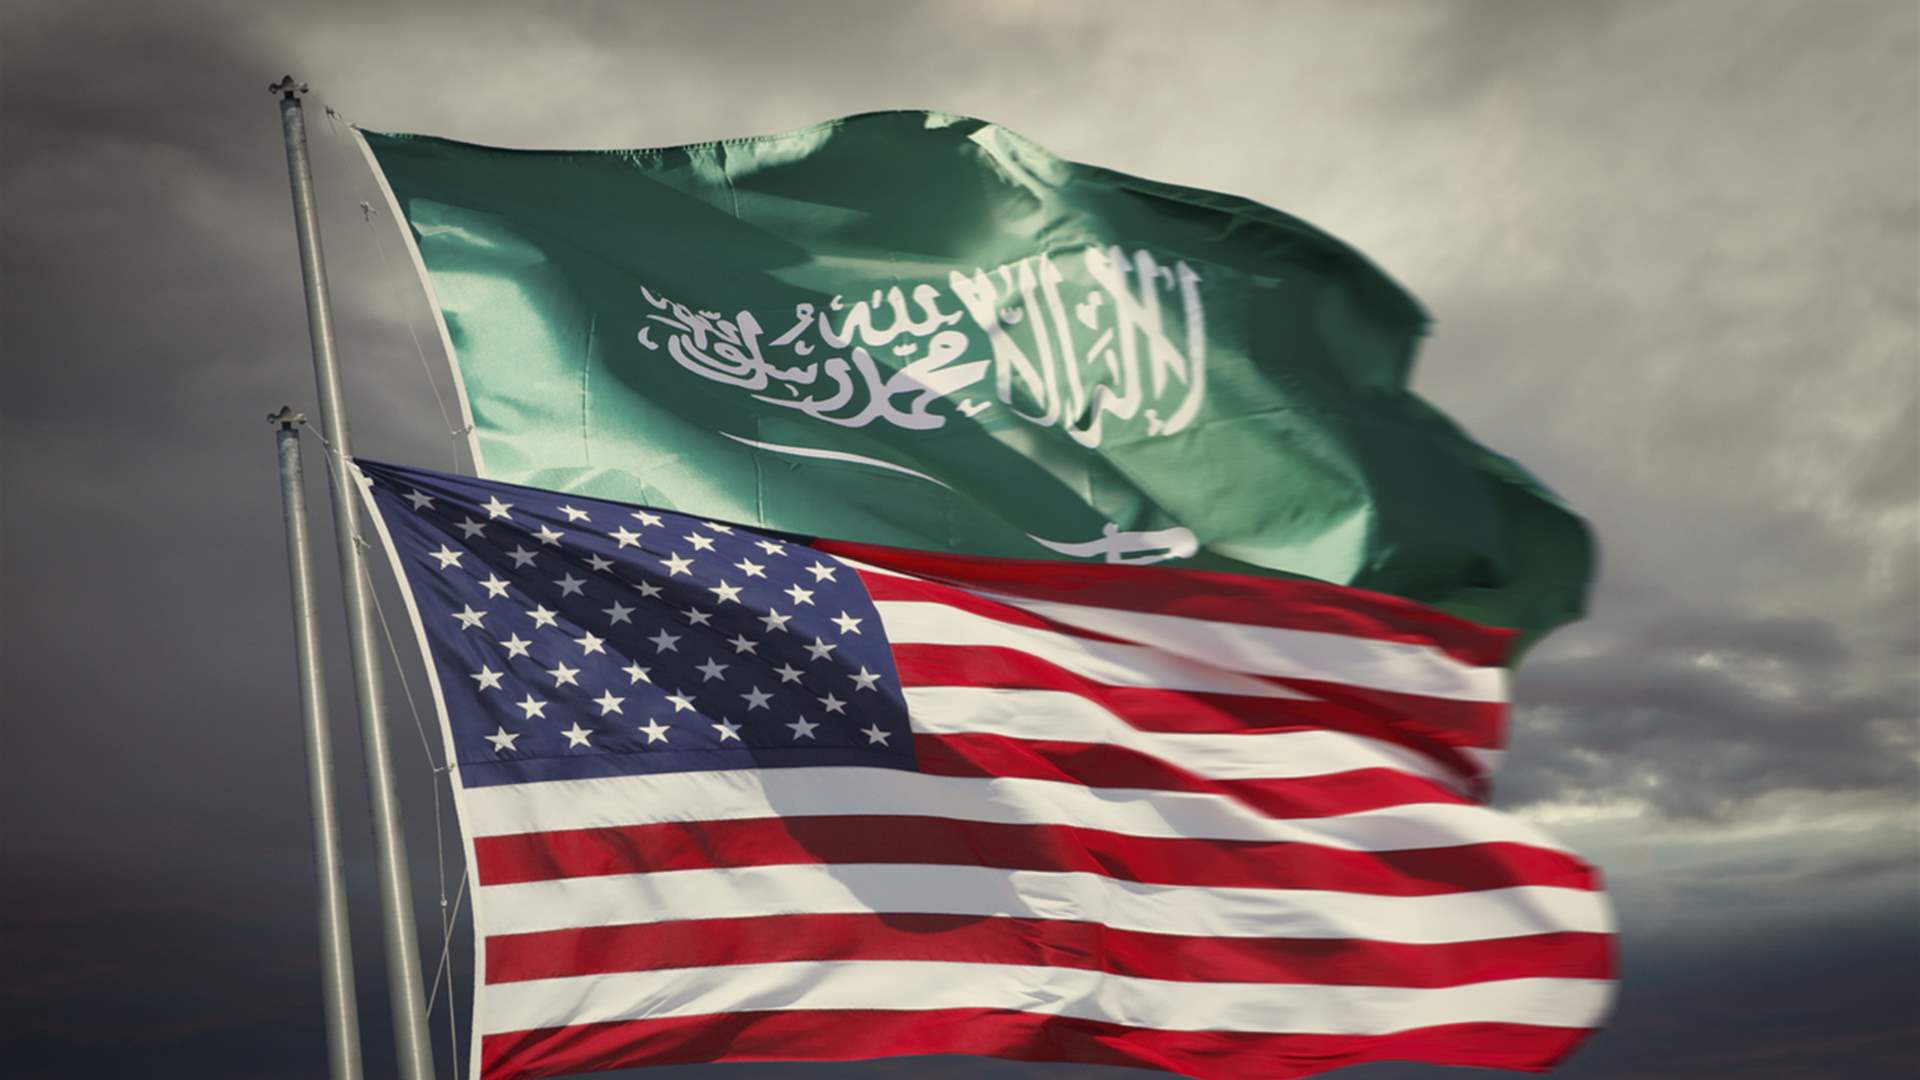 US, Saudi Arabia sign landmark space cooperation agreement